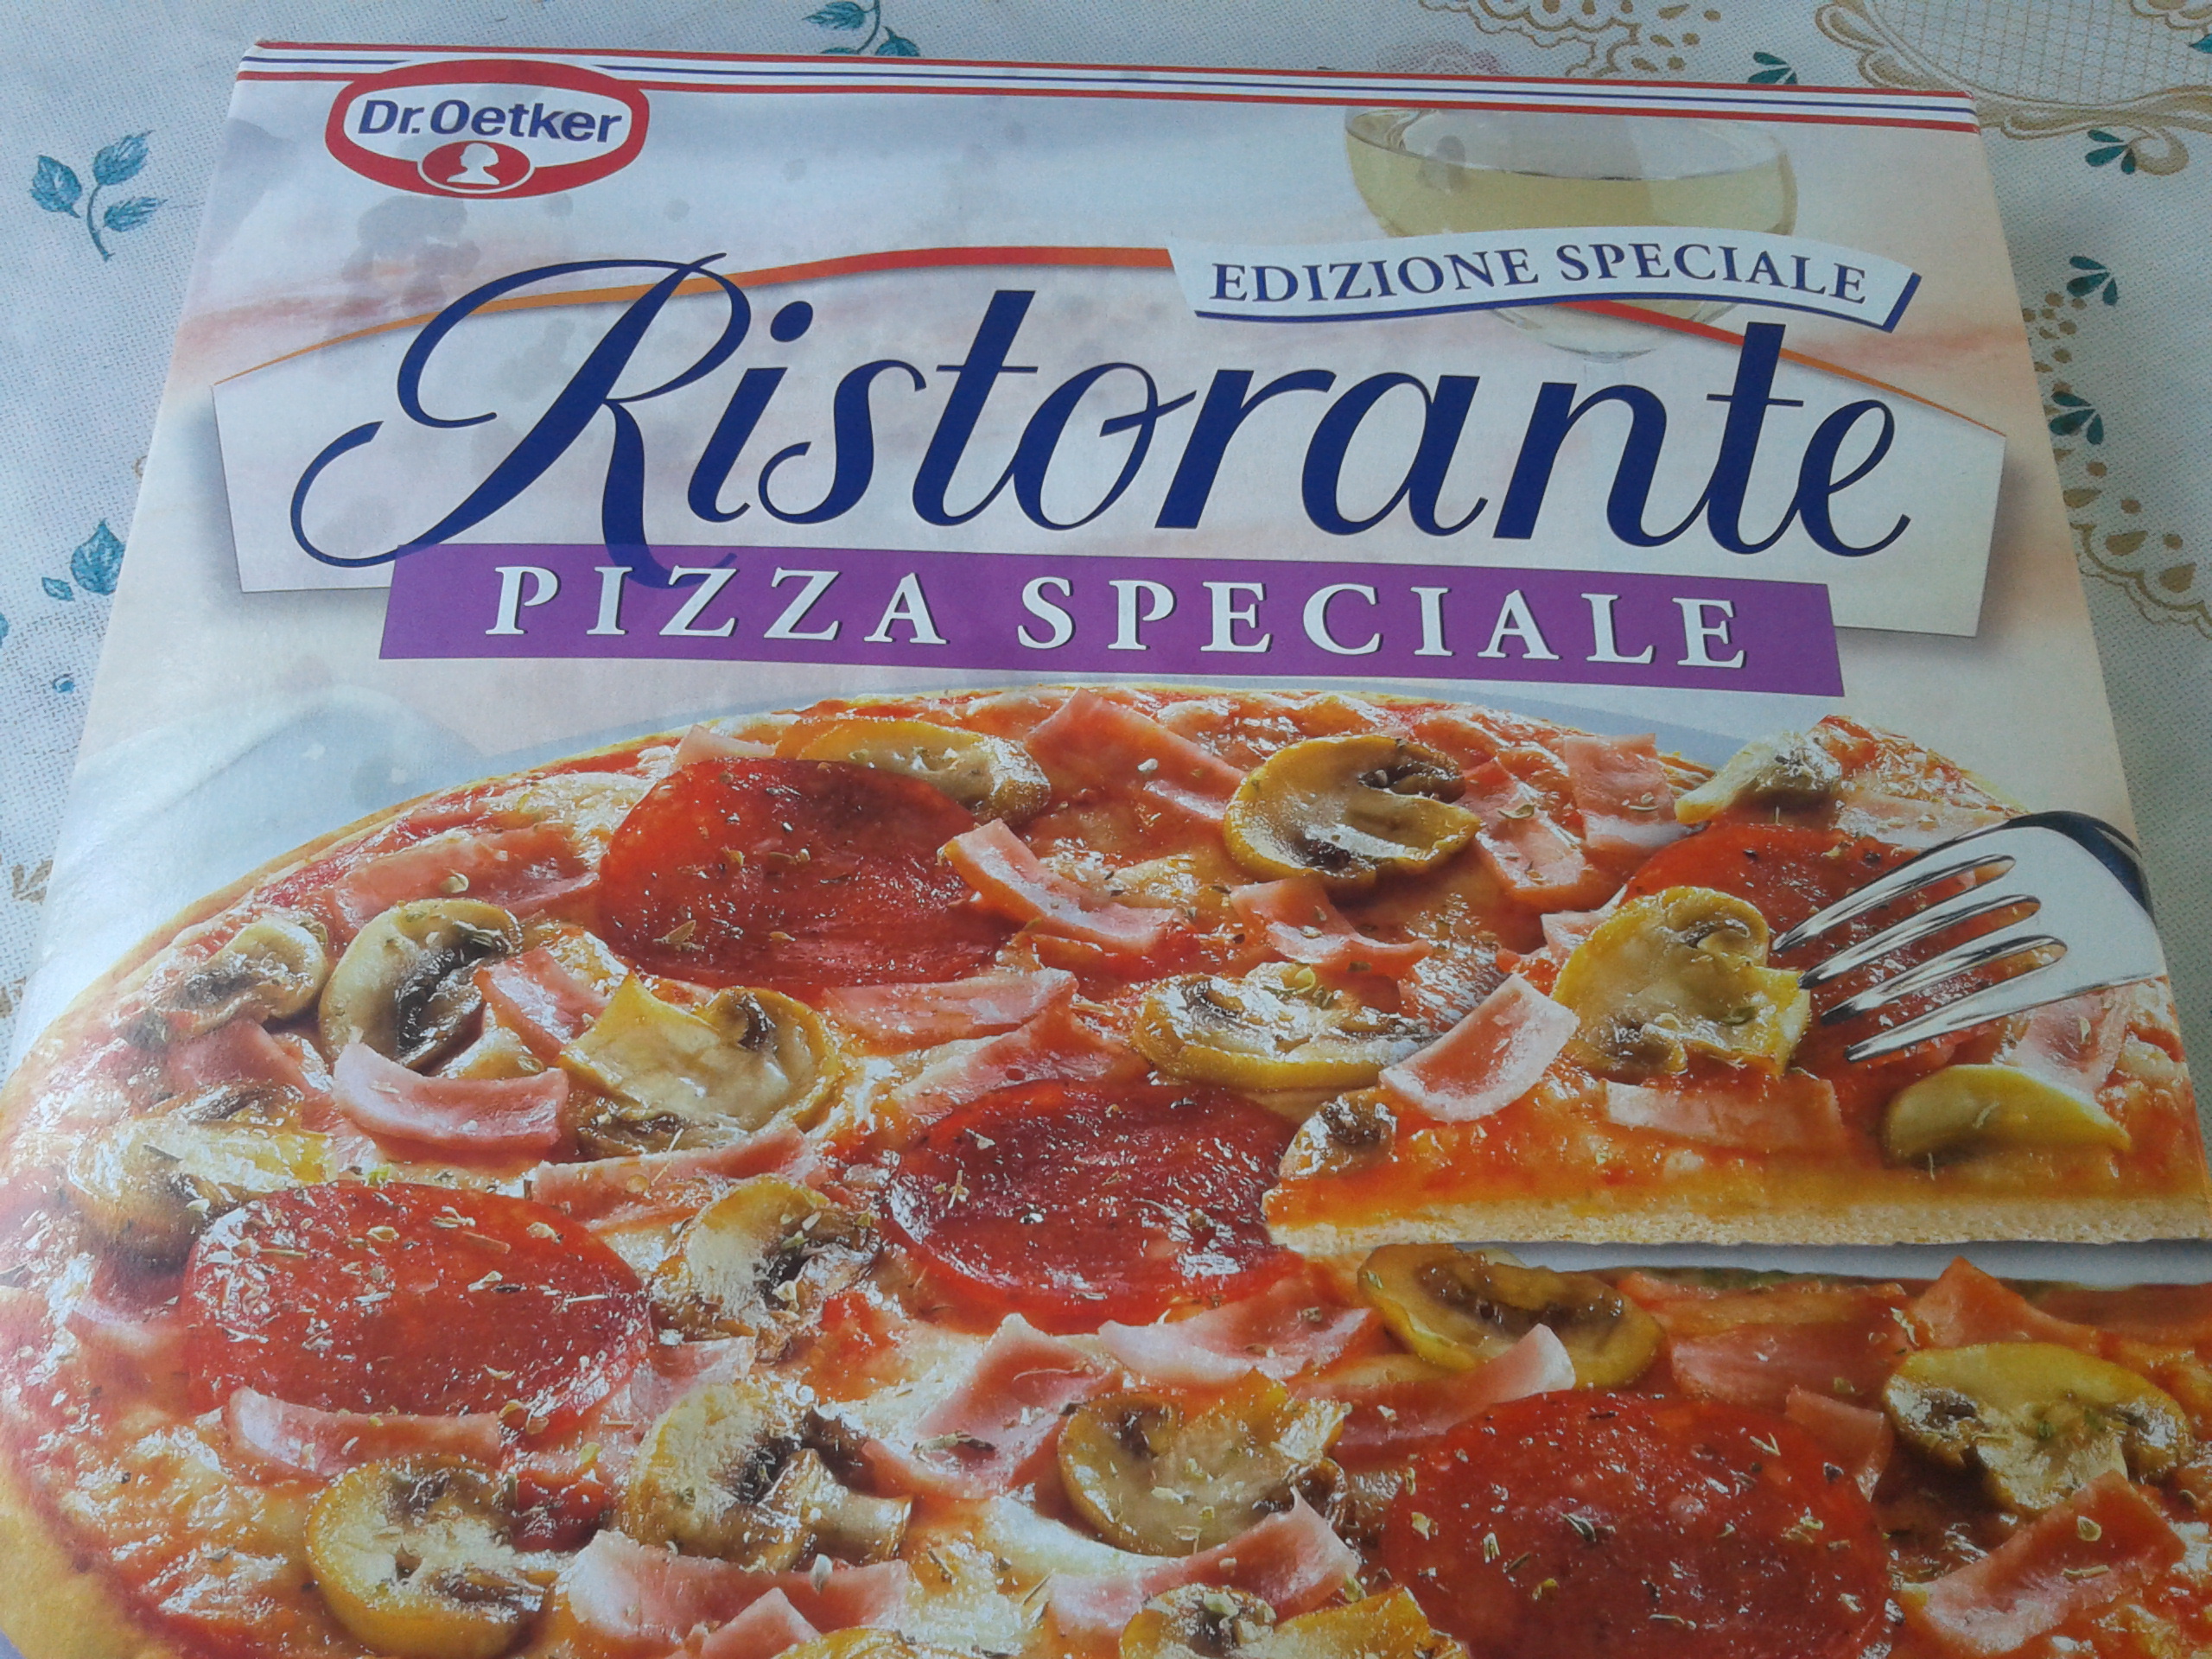 Pizza cu salam, Ristorante